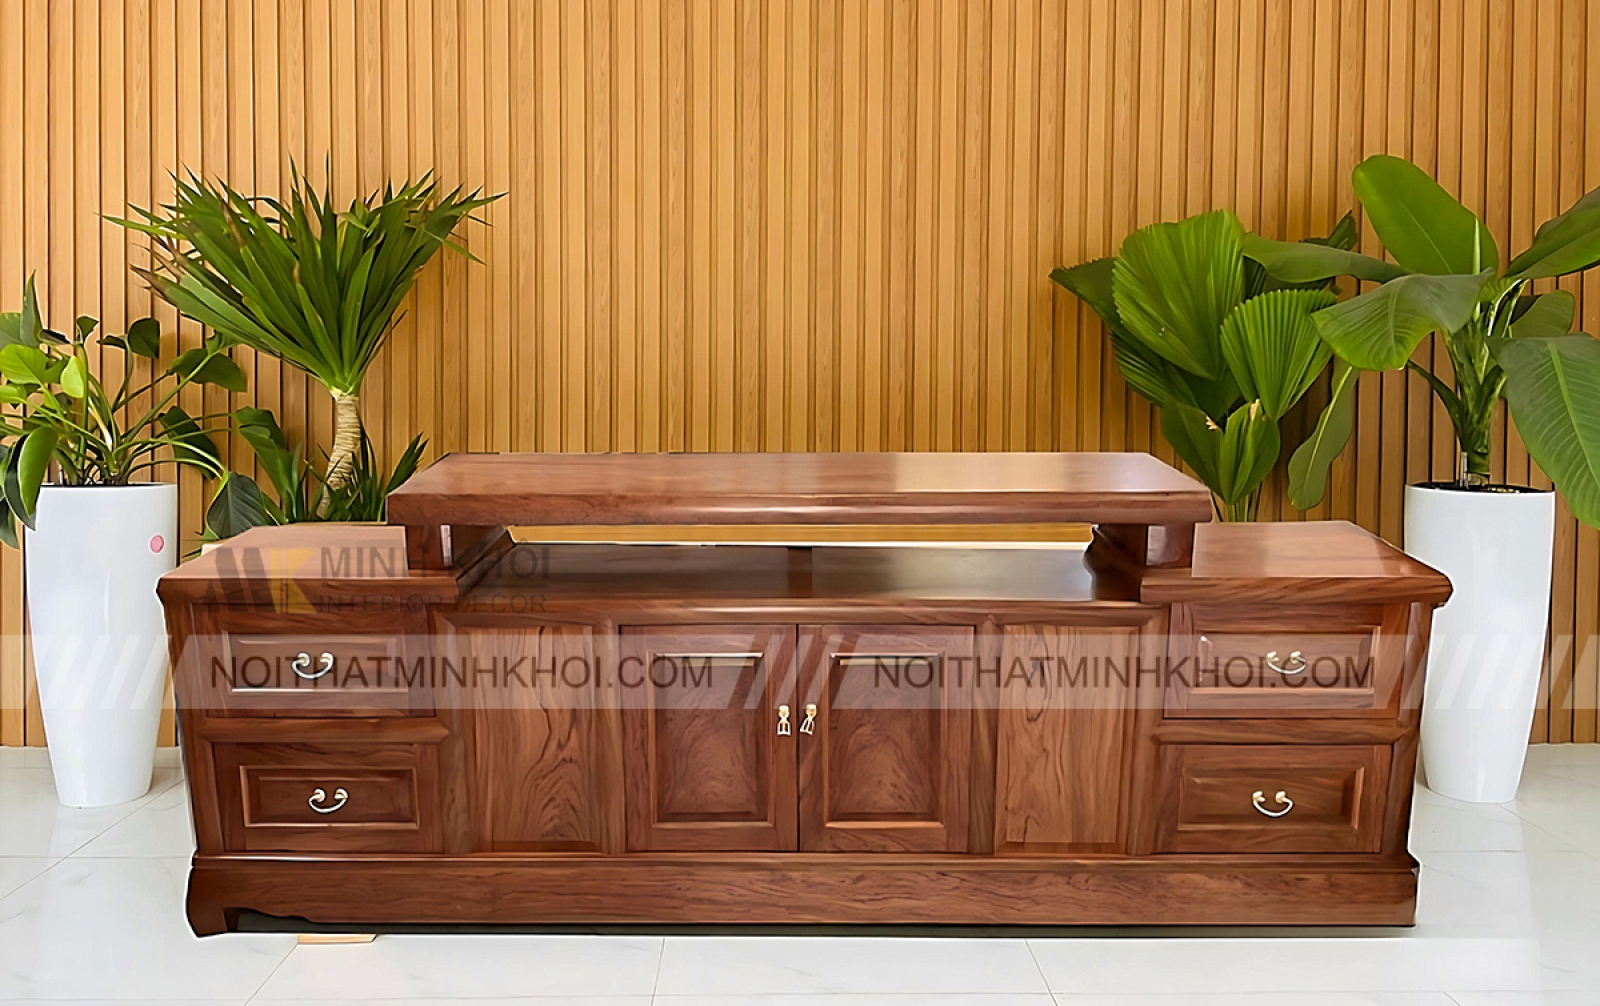 Kệ TiVi hiện đại gỗ tự nhiên KTV914 là một sản phẩm không thể thiếu trong phòng khách của bạn. Với thiết kế tinh tế, chiếc kệ mang đến sự tiện ích và thẩm mỹ cho không gian sống của bạn. Làm từ chất liệu gỗ tự nhiên cao cấp, sẵn sàng đón nhận mọi thách thức từ thời gian và sử dụng thường xuyên. Hãy mang về cho mình một chiếc kệ TiVi gỗ tự nhiên KTV914 với mức giá hợp lý nhất.